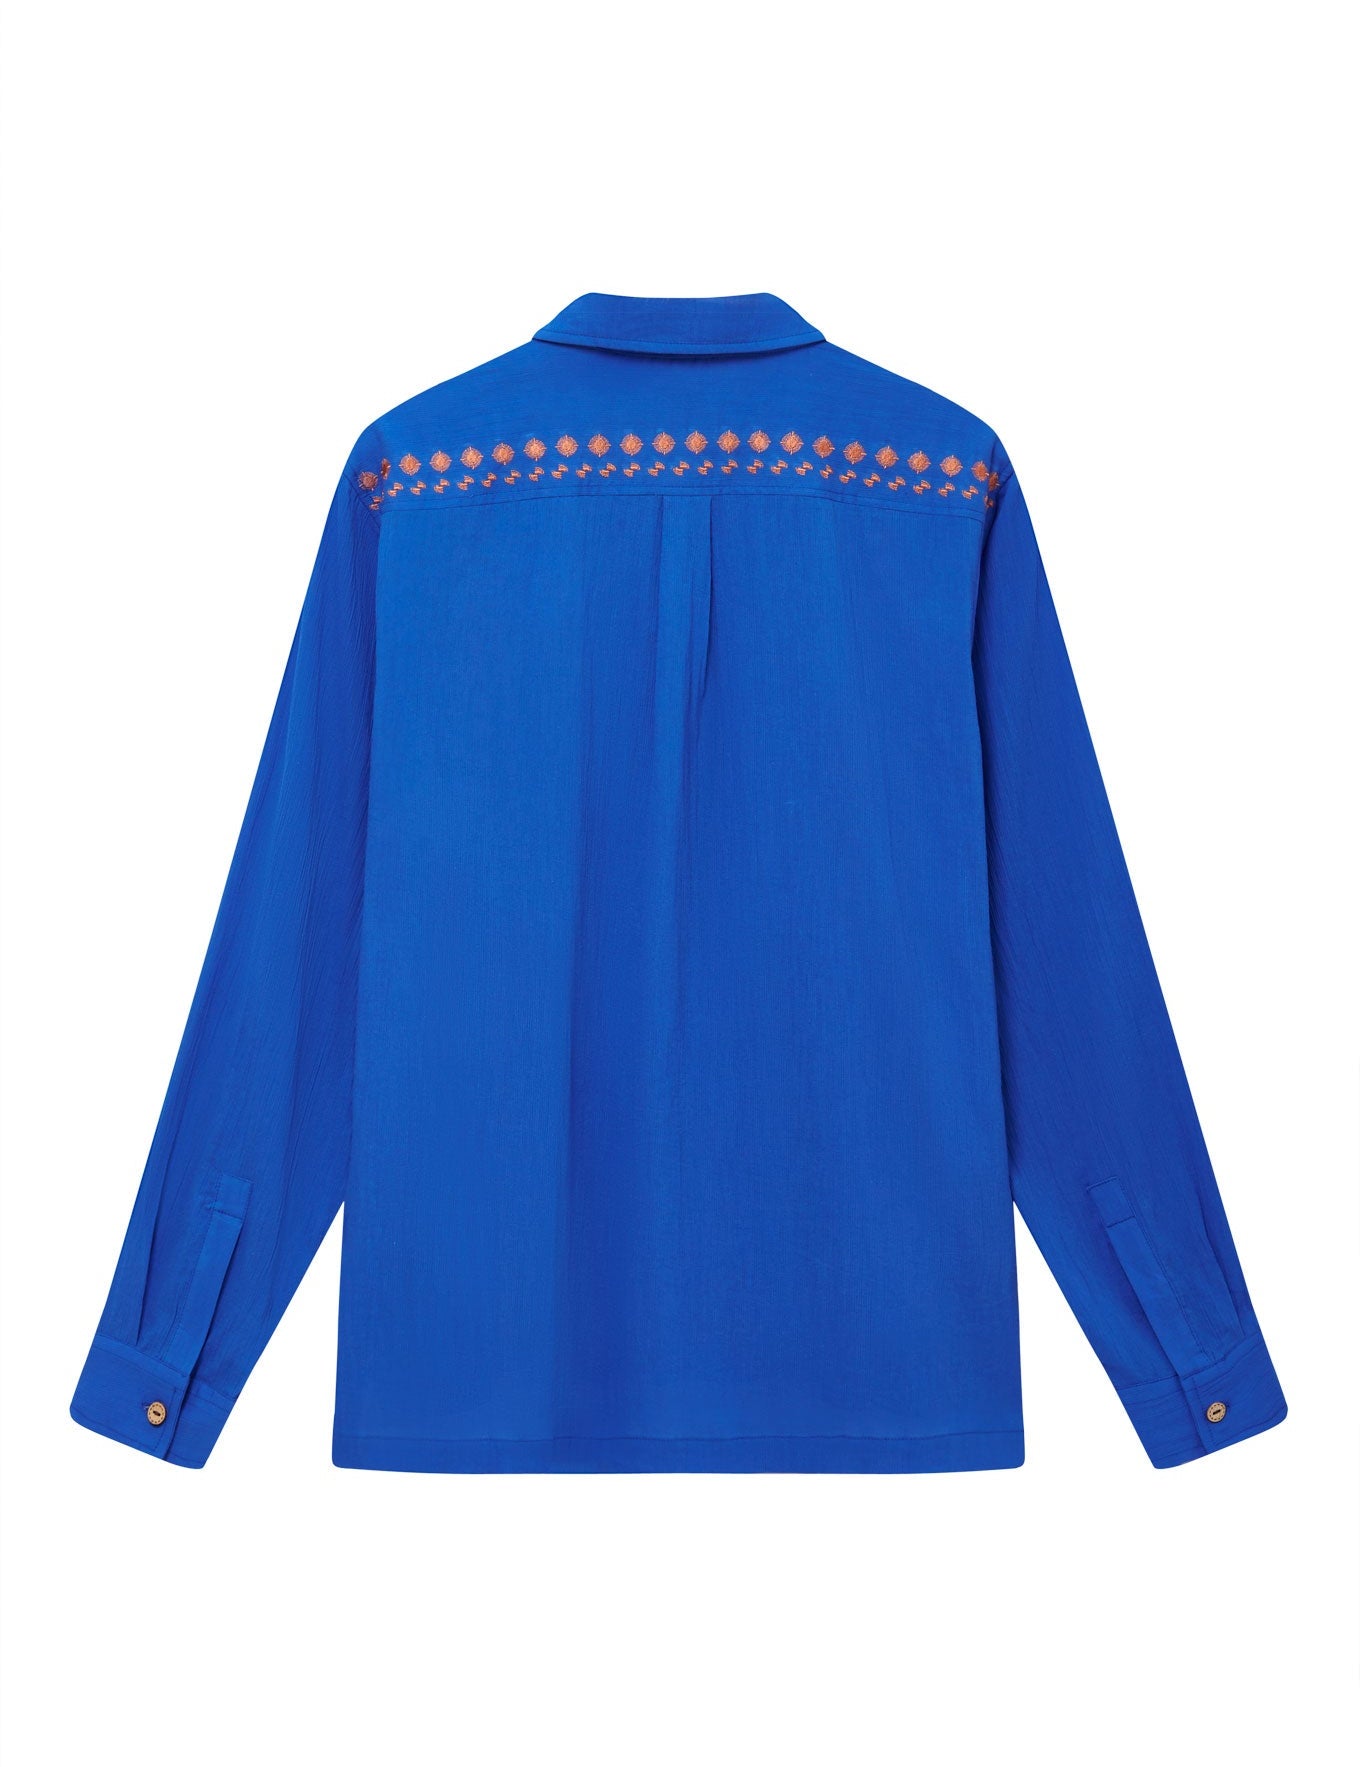 C1-OCV-59BF-nile-shirt---bali-fans-embroidery-sapphire-blue-Back_a0a50c09-e747-410c-9400-2bcb7aee443a.jpg